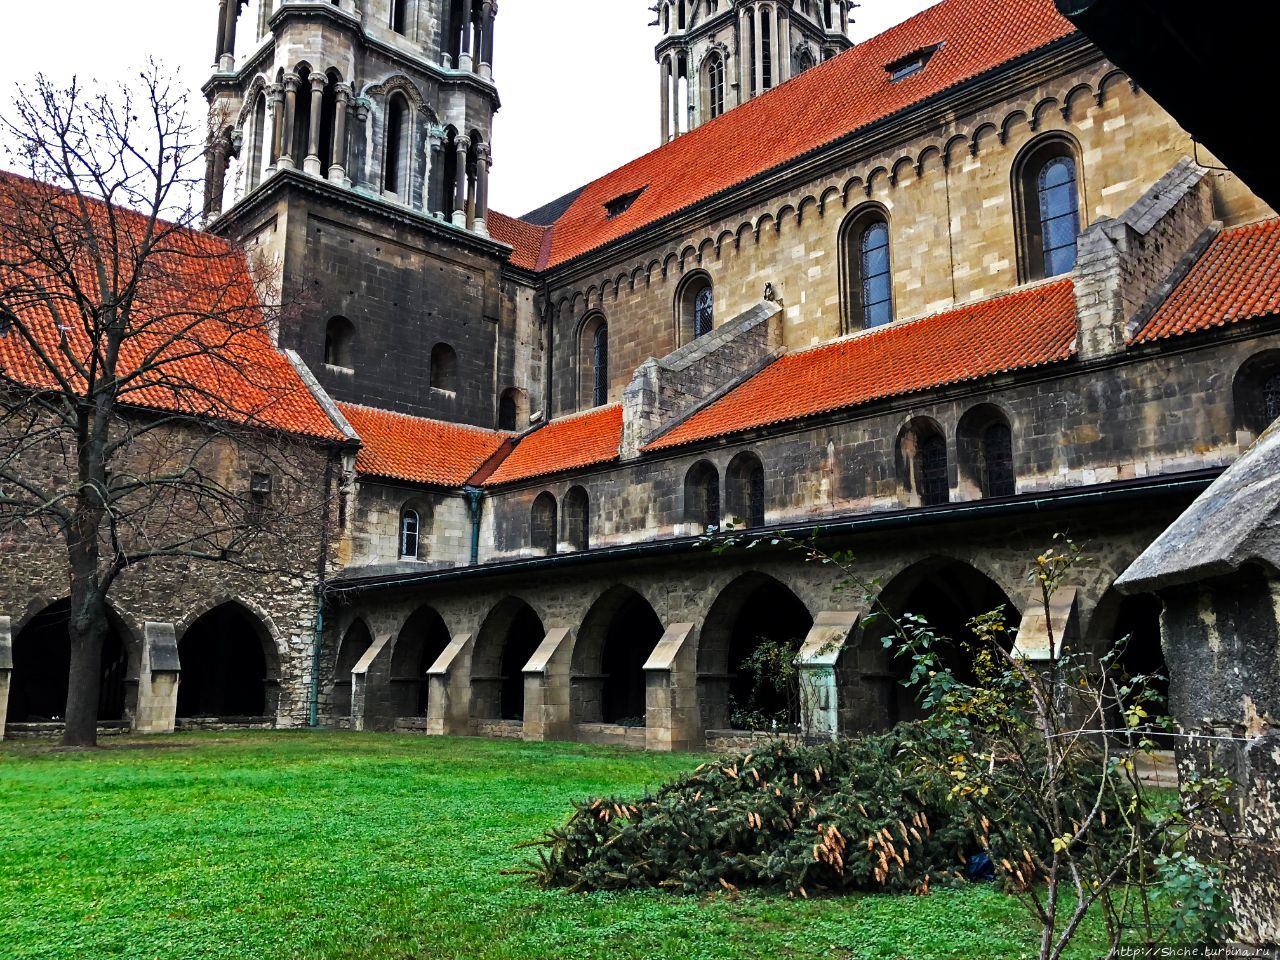 Ута, Наумбургский собор и его особенности (ЮНЕСКО № 1470)